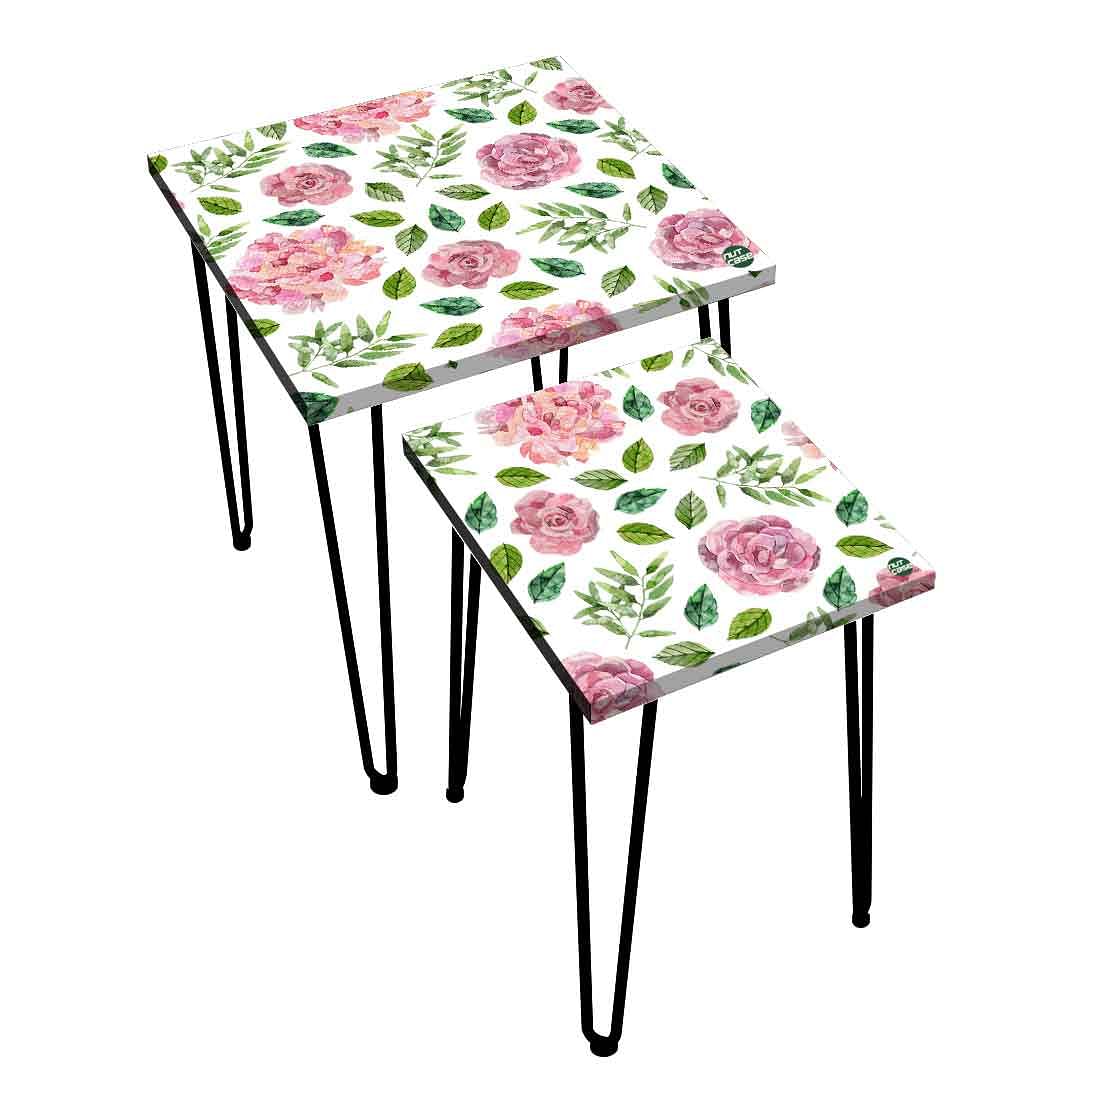 Designer Metal Nesting Tables Set of 2 for Kitchen - Floral Designer Nutcase